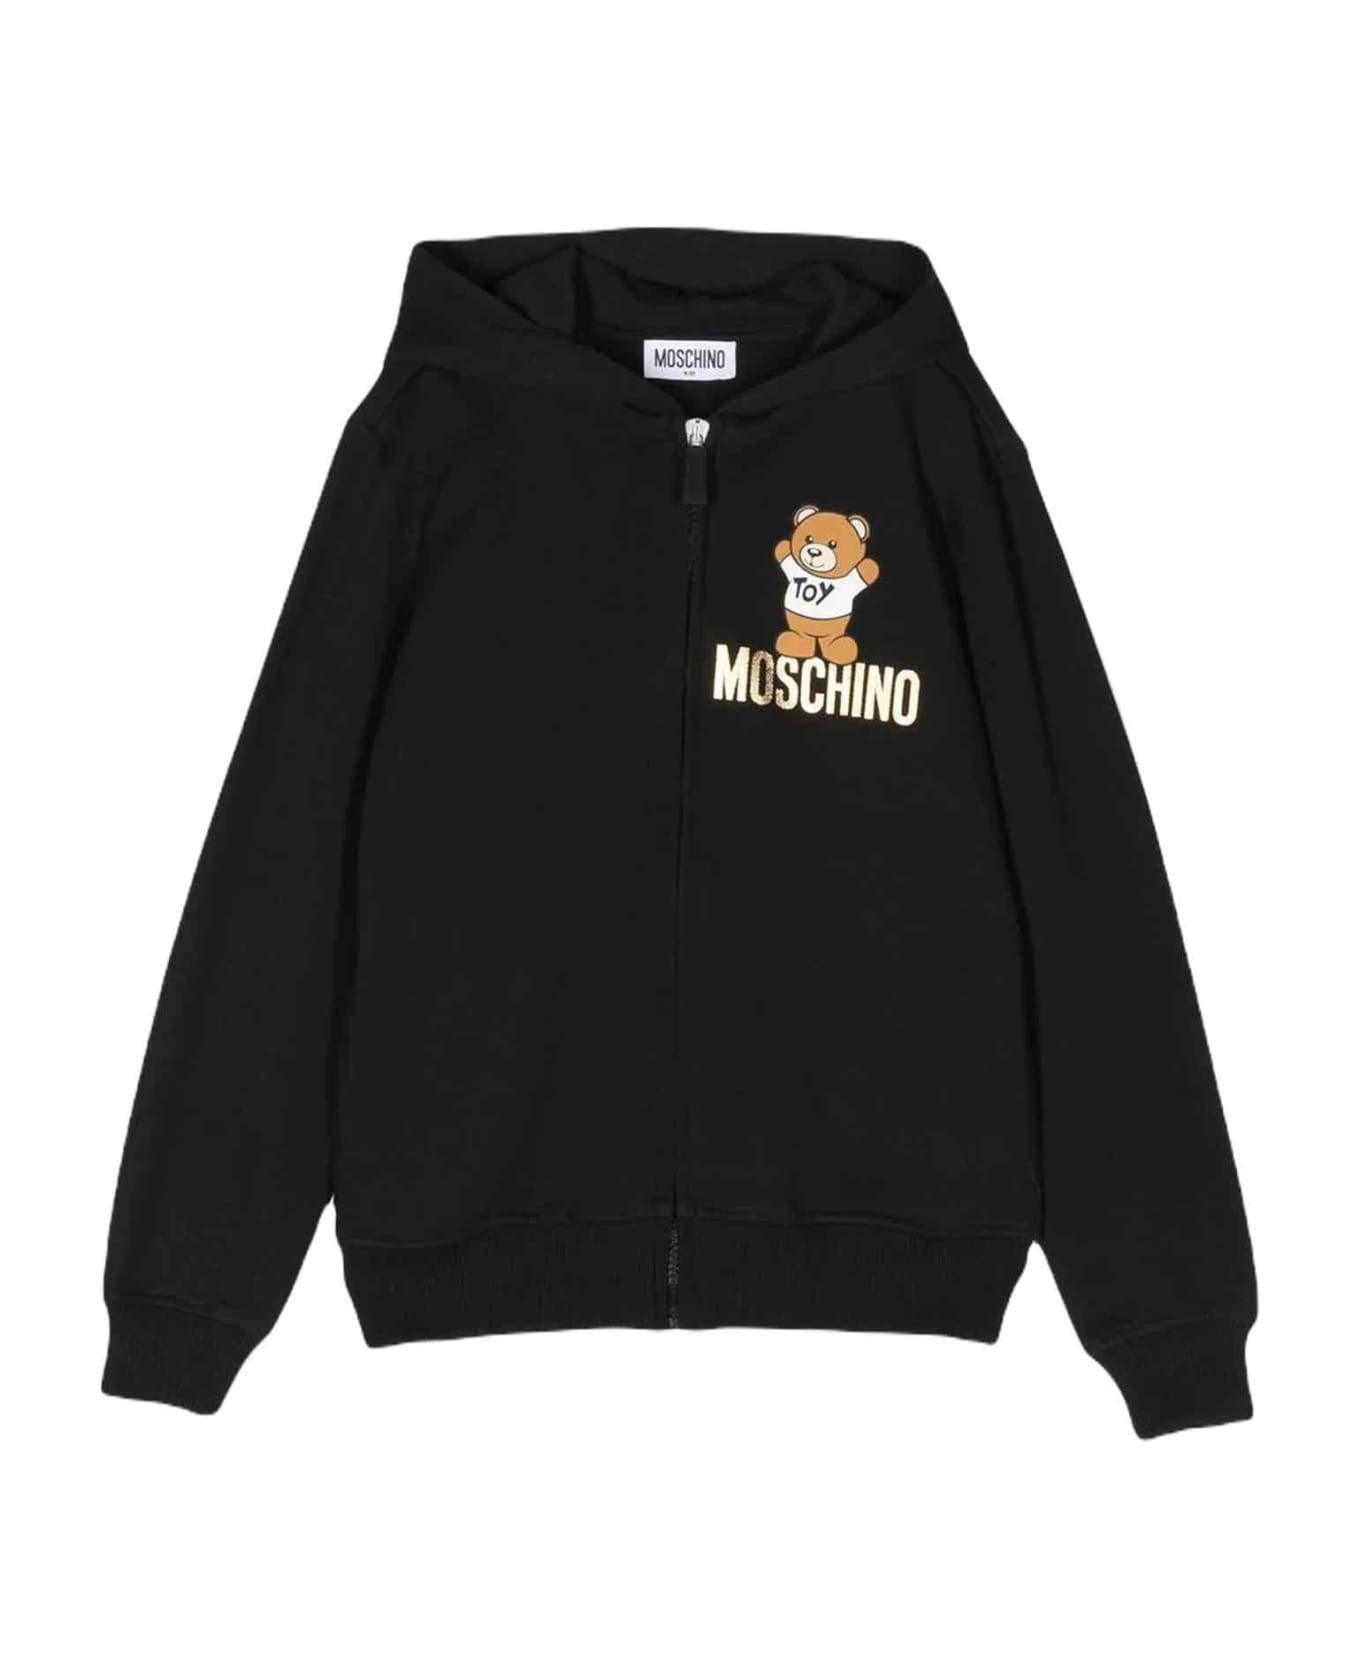 Moschino Black Sweatshirt Unisex - Nero